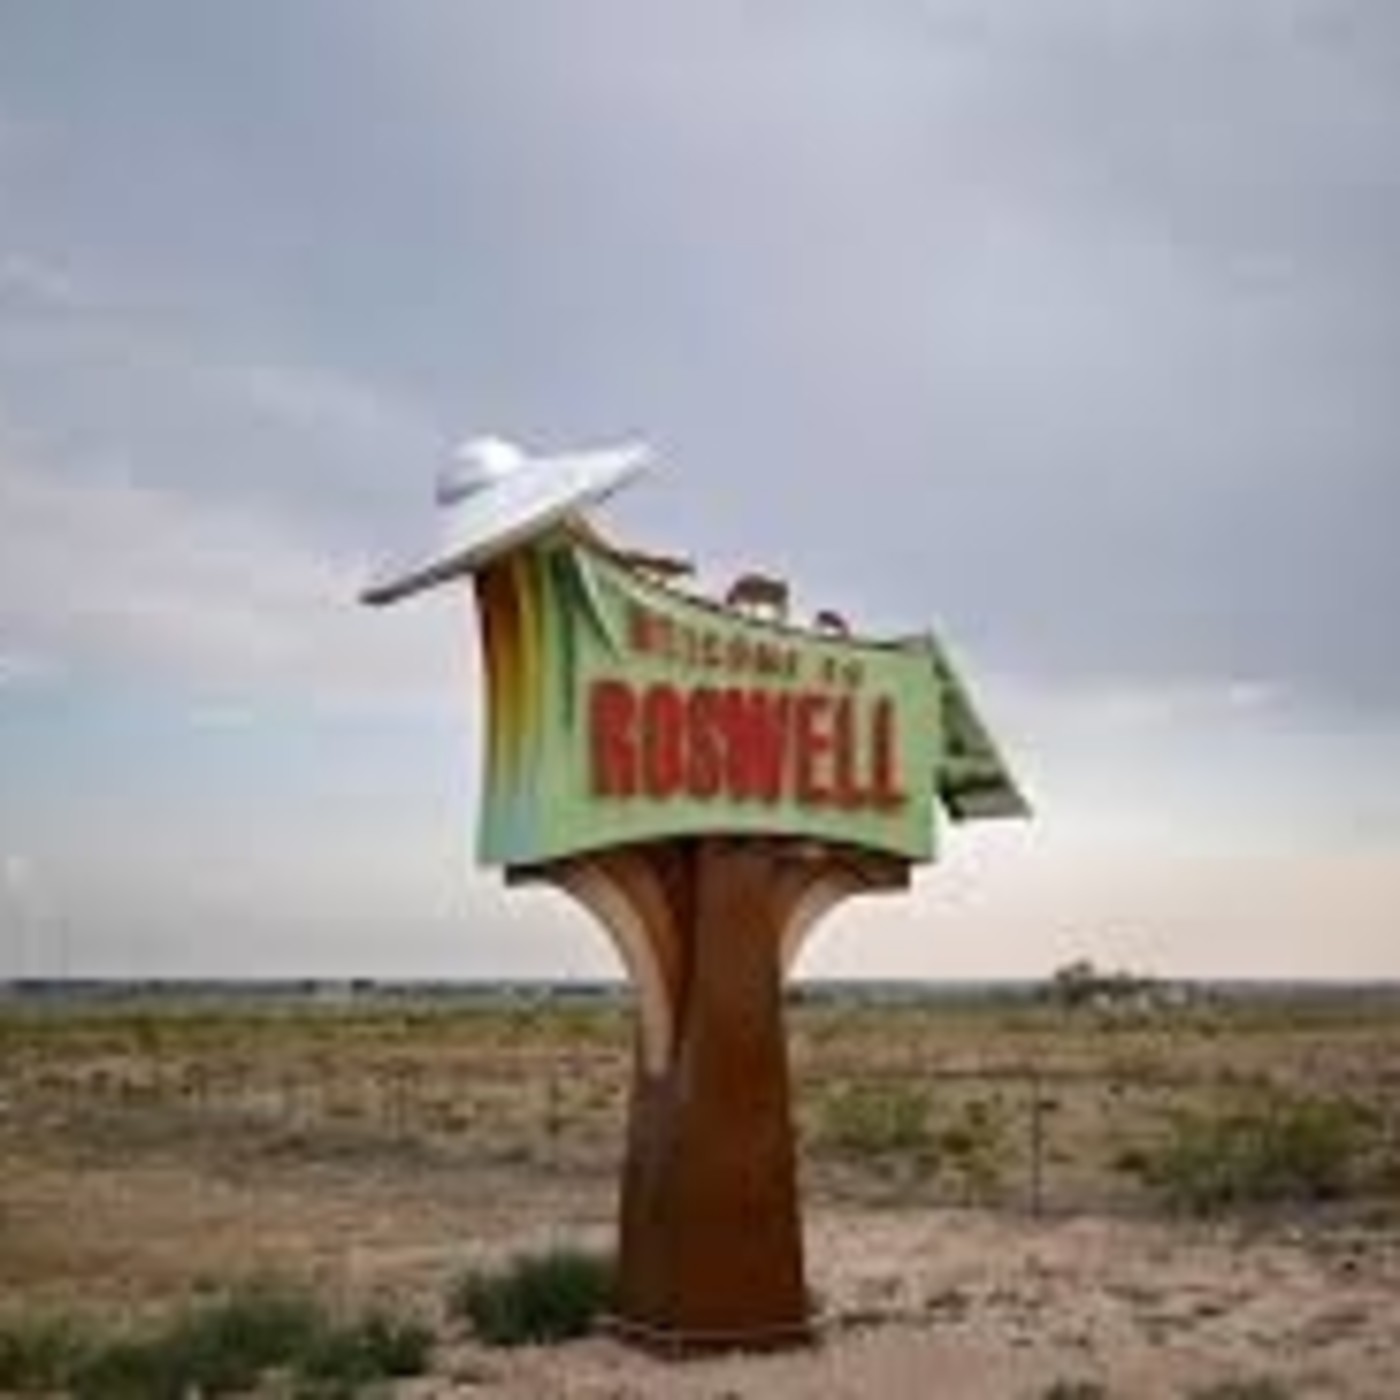 Roswell: La última sorpresa • Neuroqwerty • El cementerio de las ánimas errantes